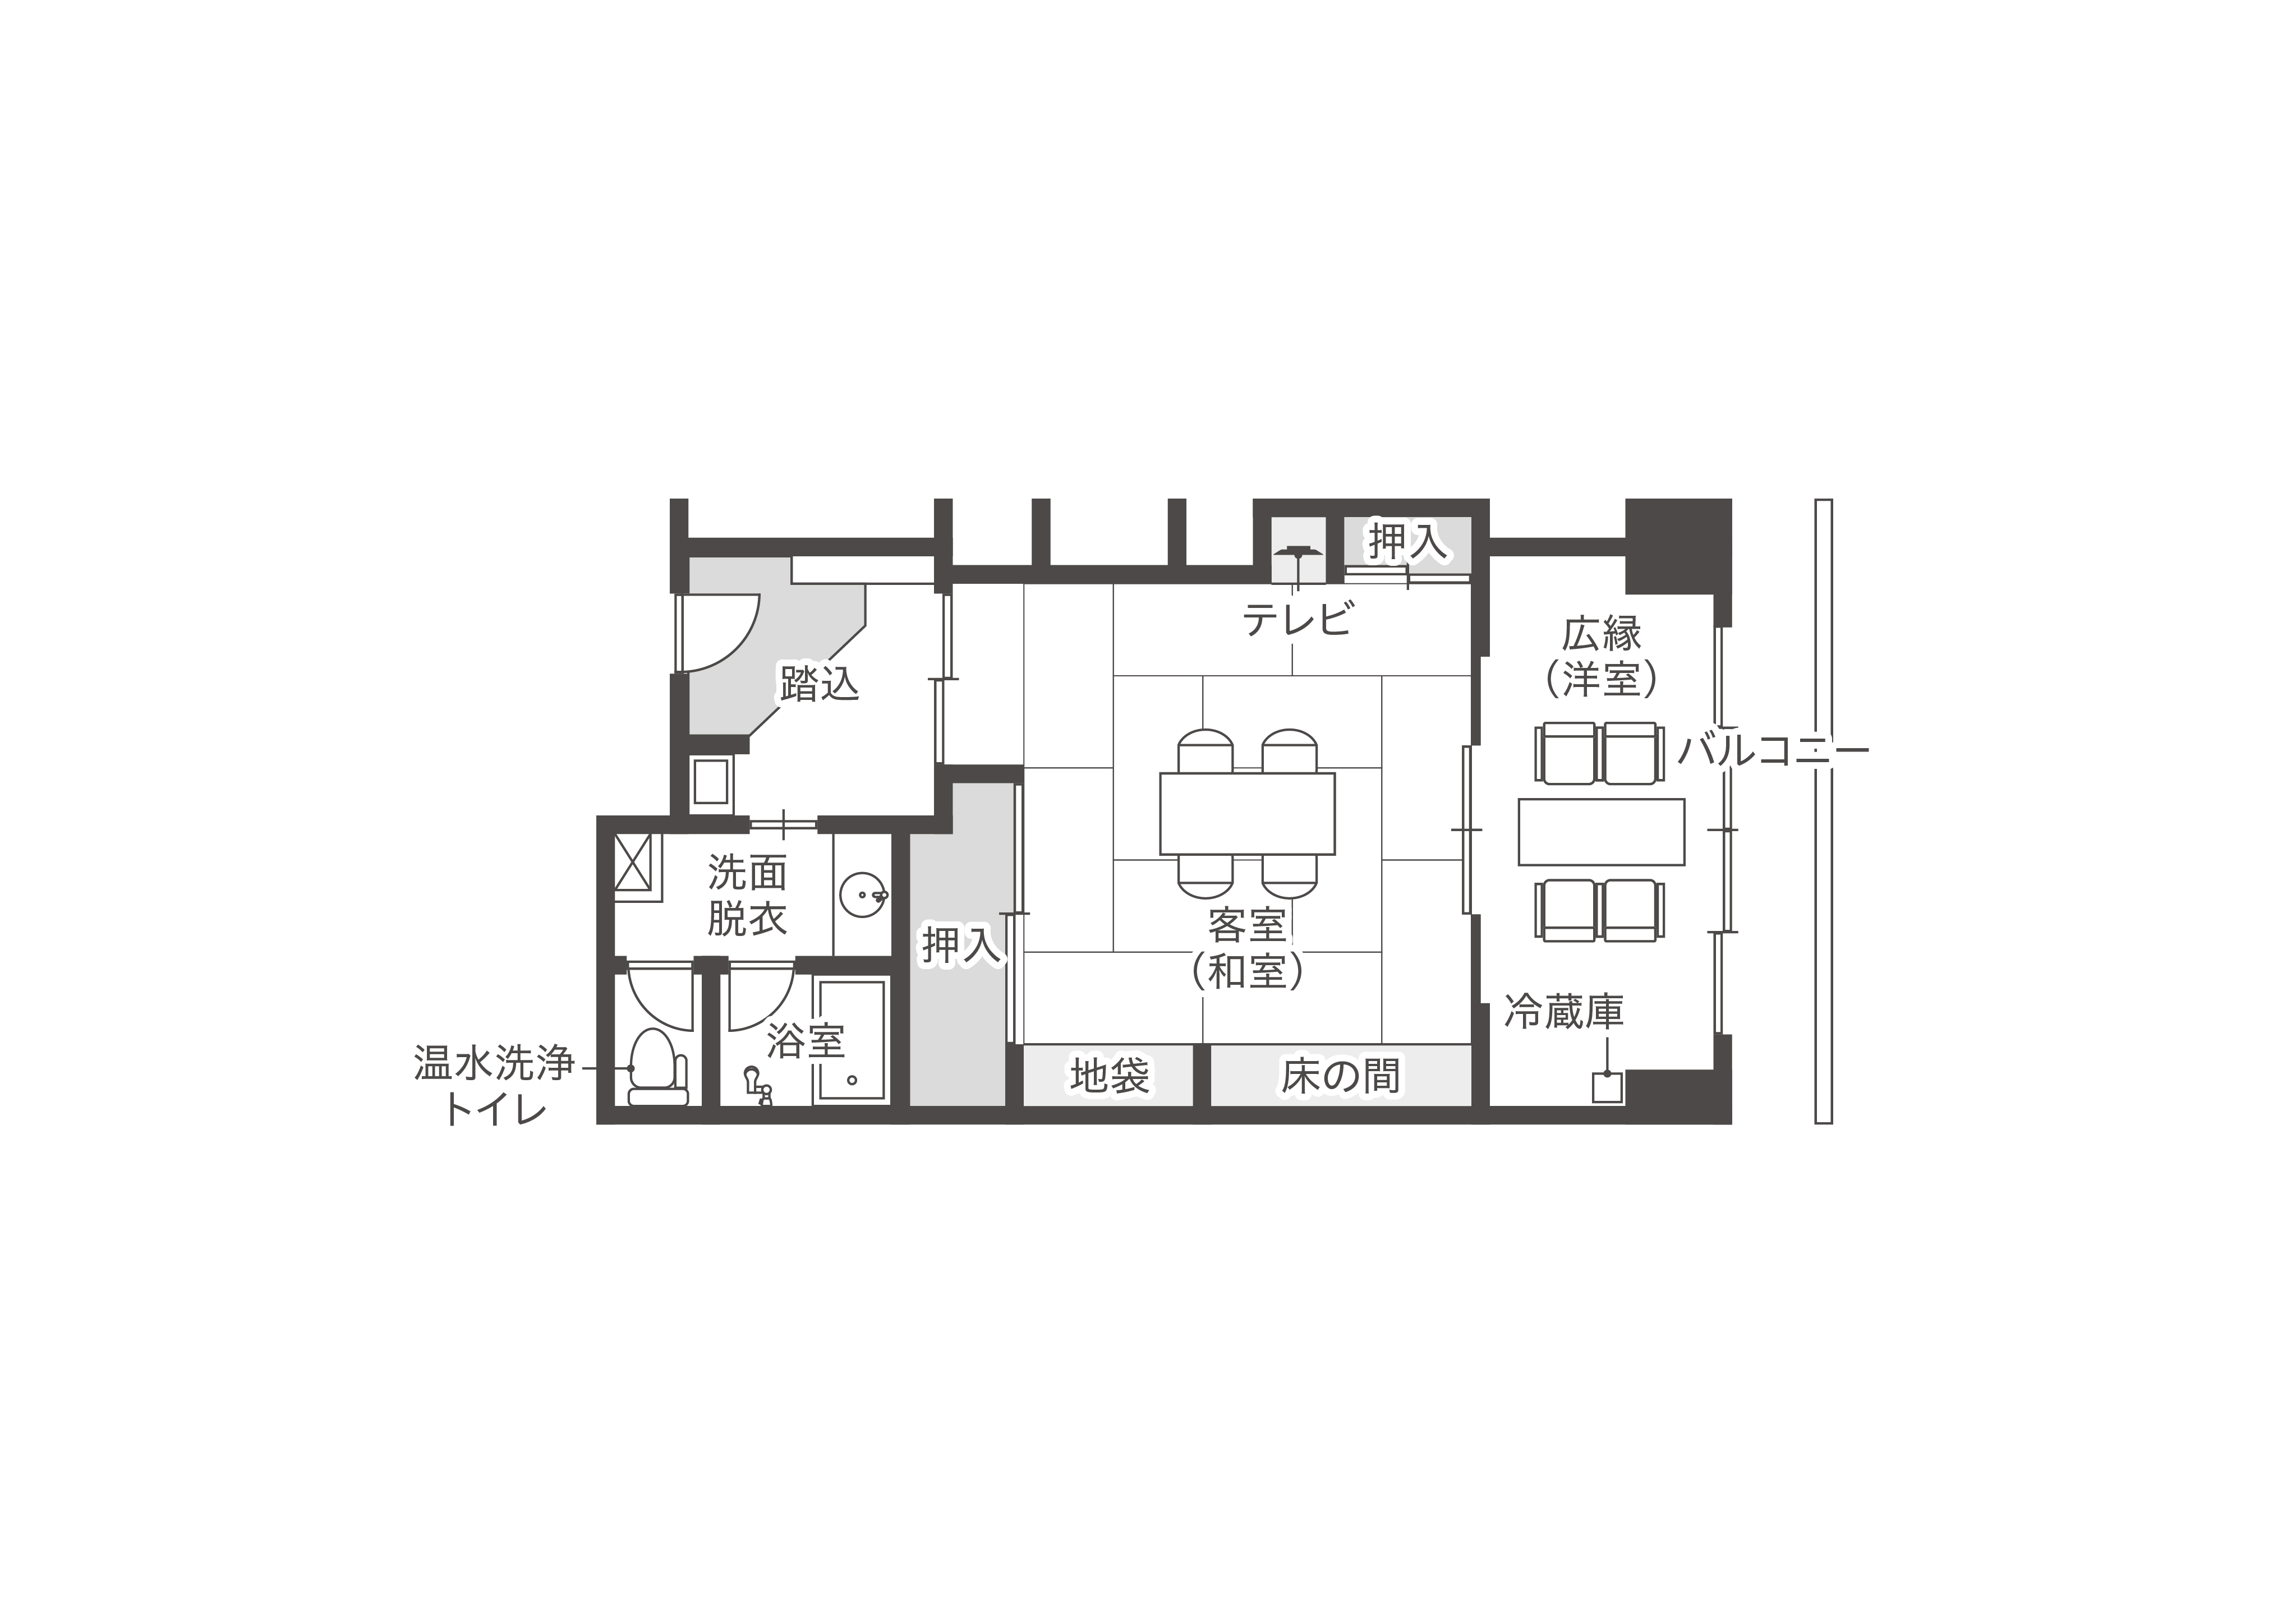 【ルームマップ】翠遥亭和室